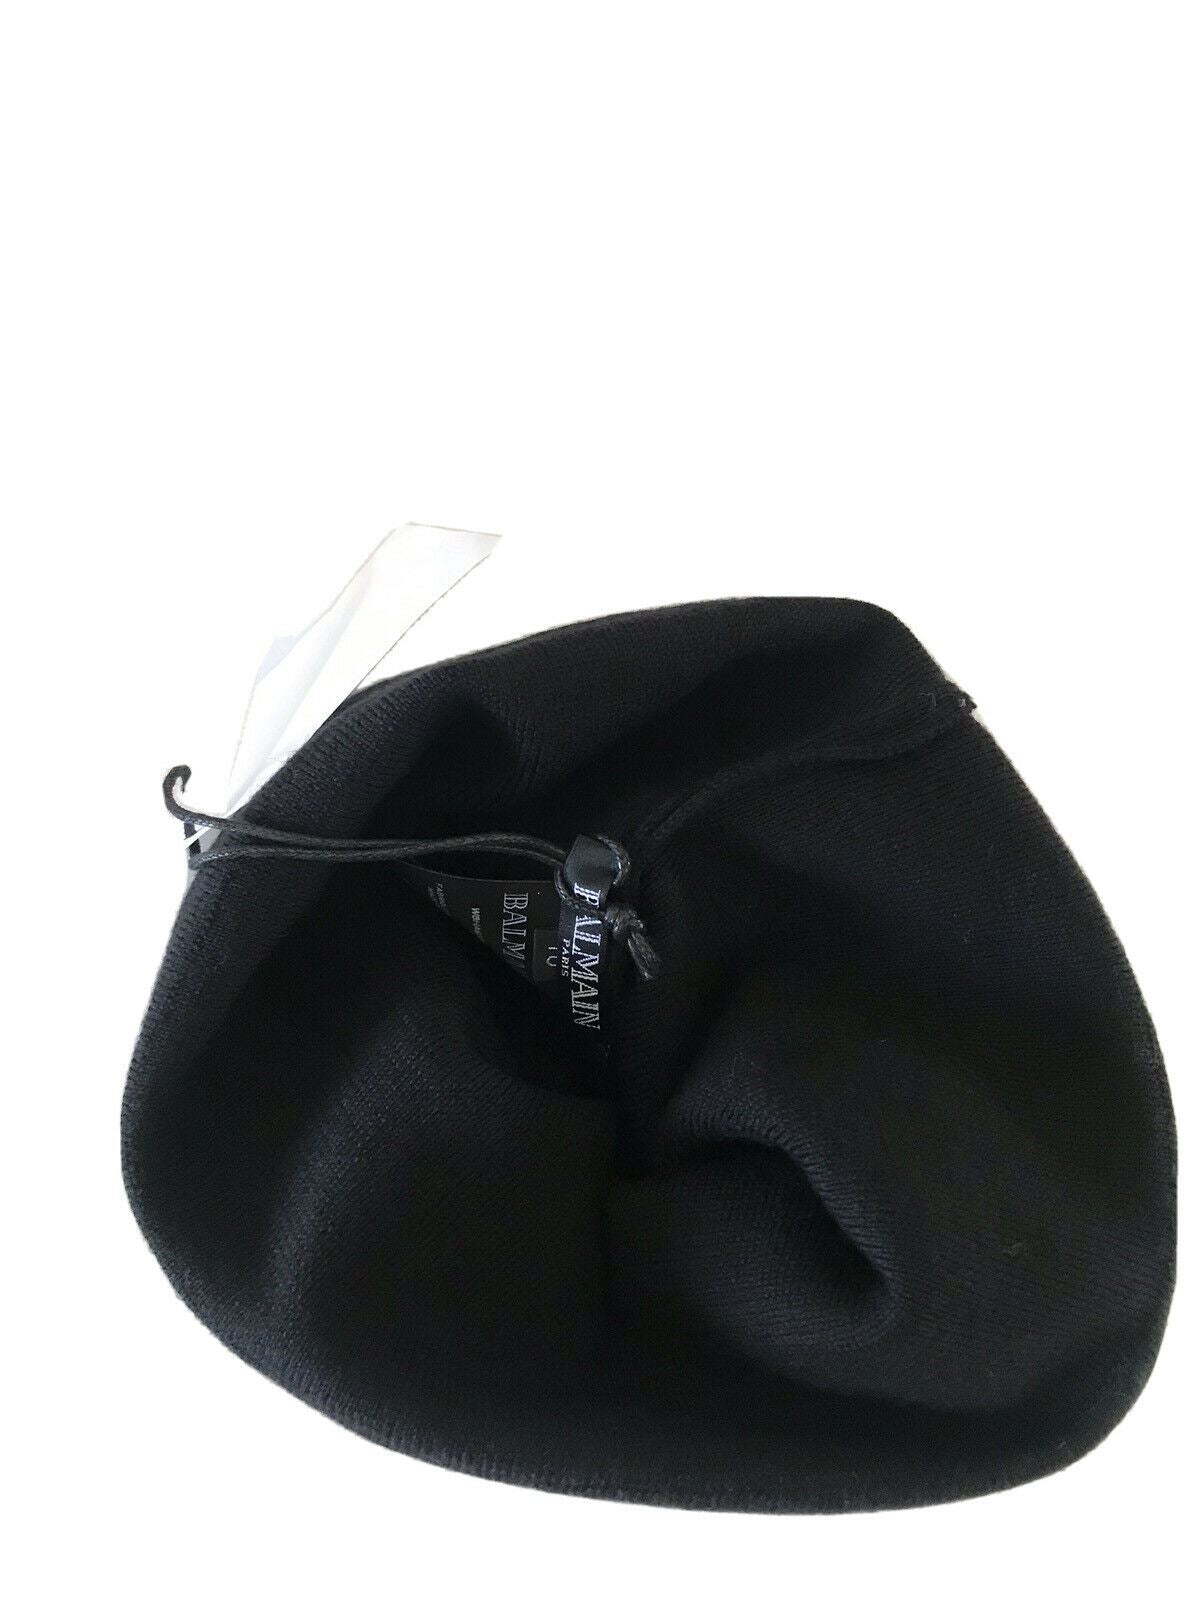 СЗТ $520 Шапка-бини с логотипом Balmain, черный/белый, один размер